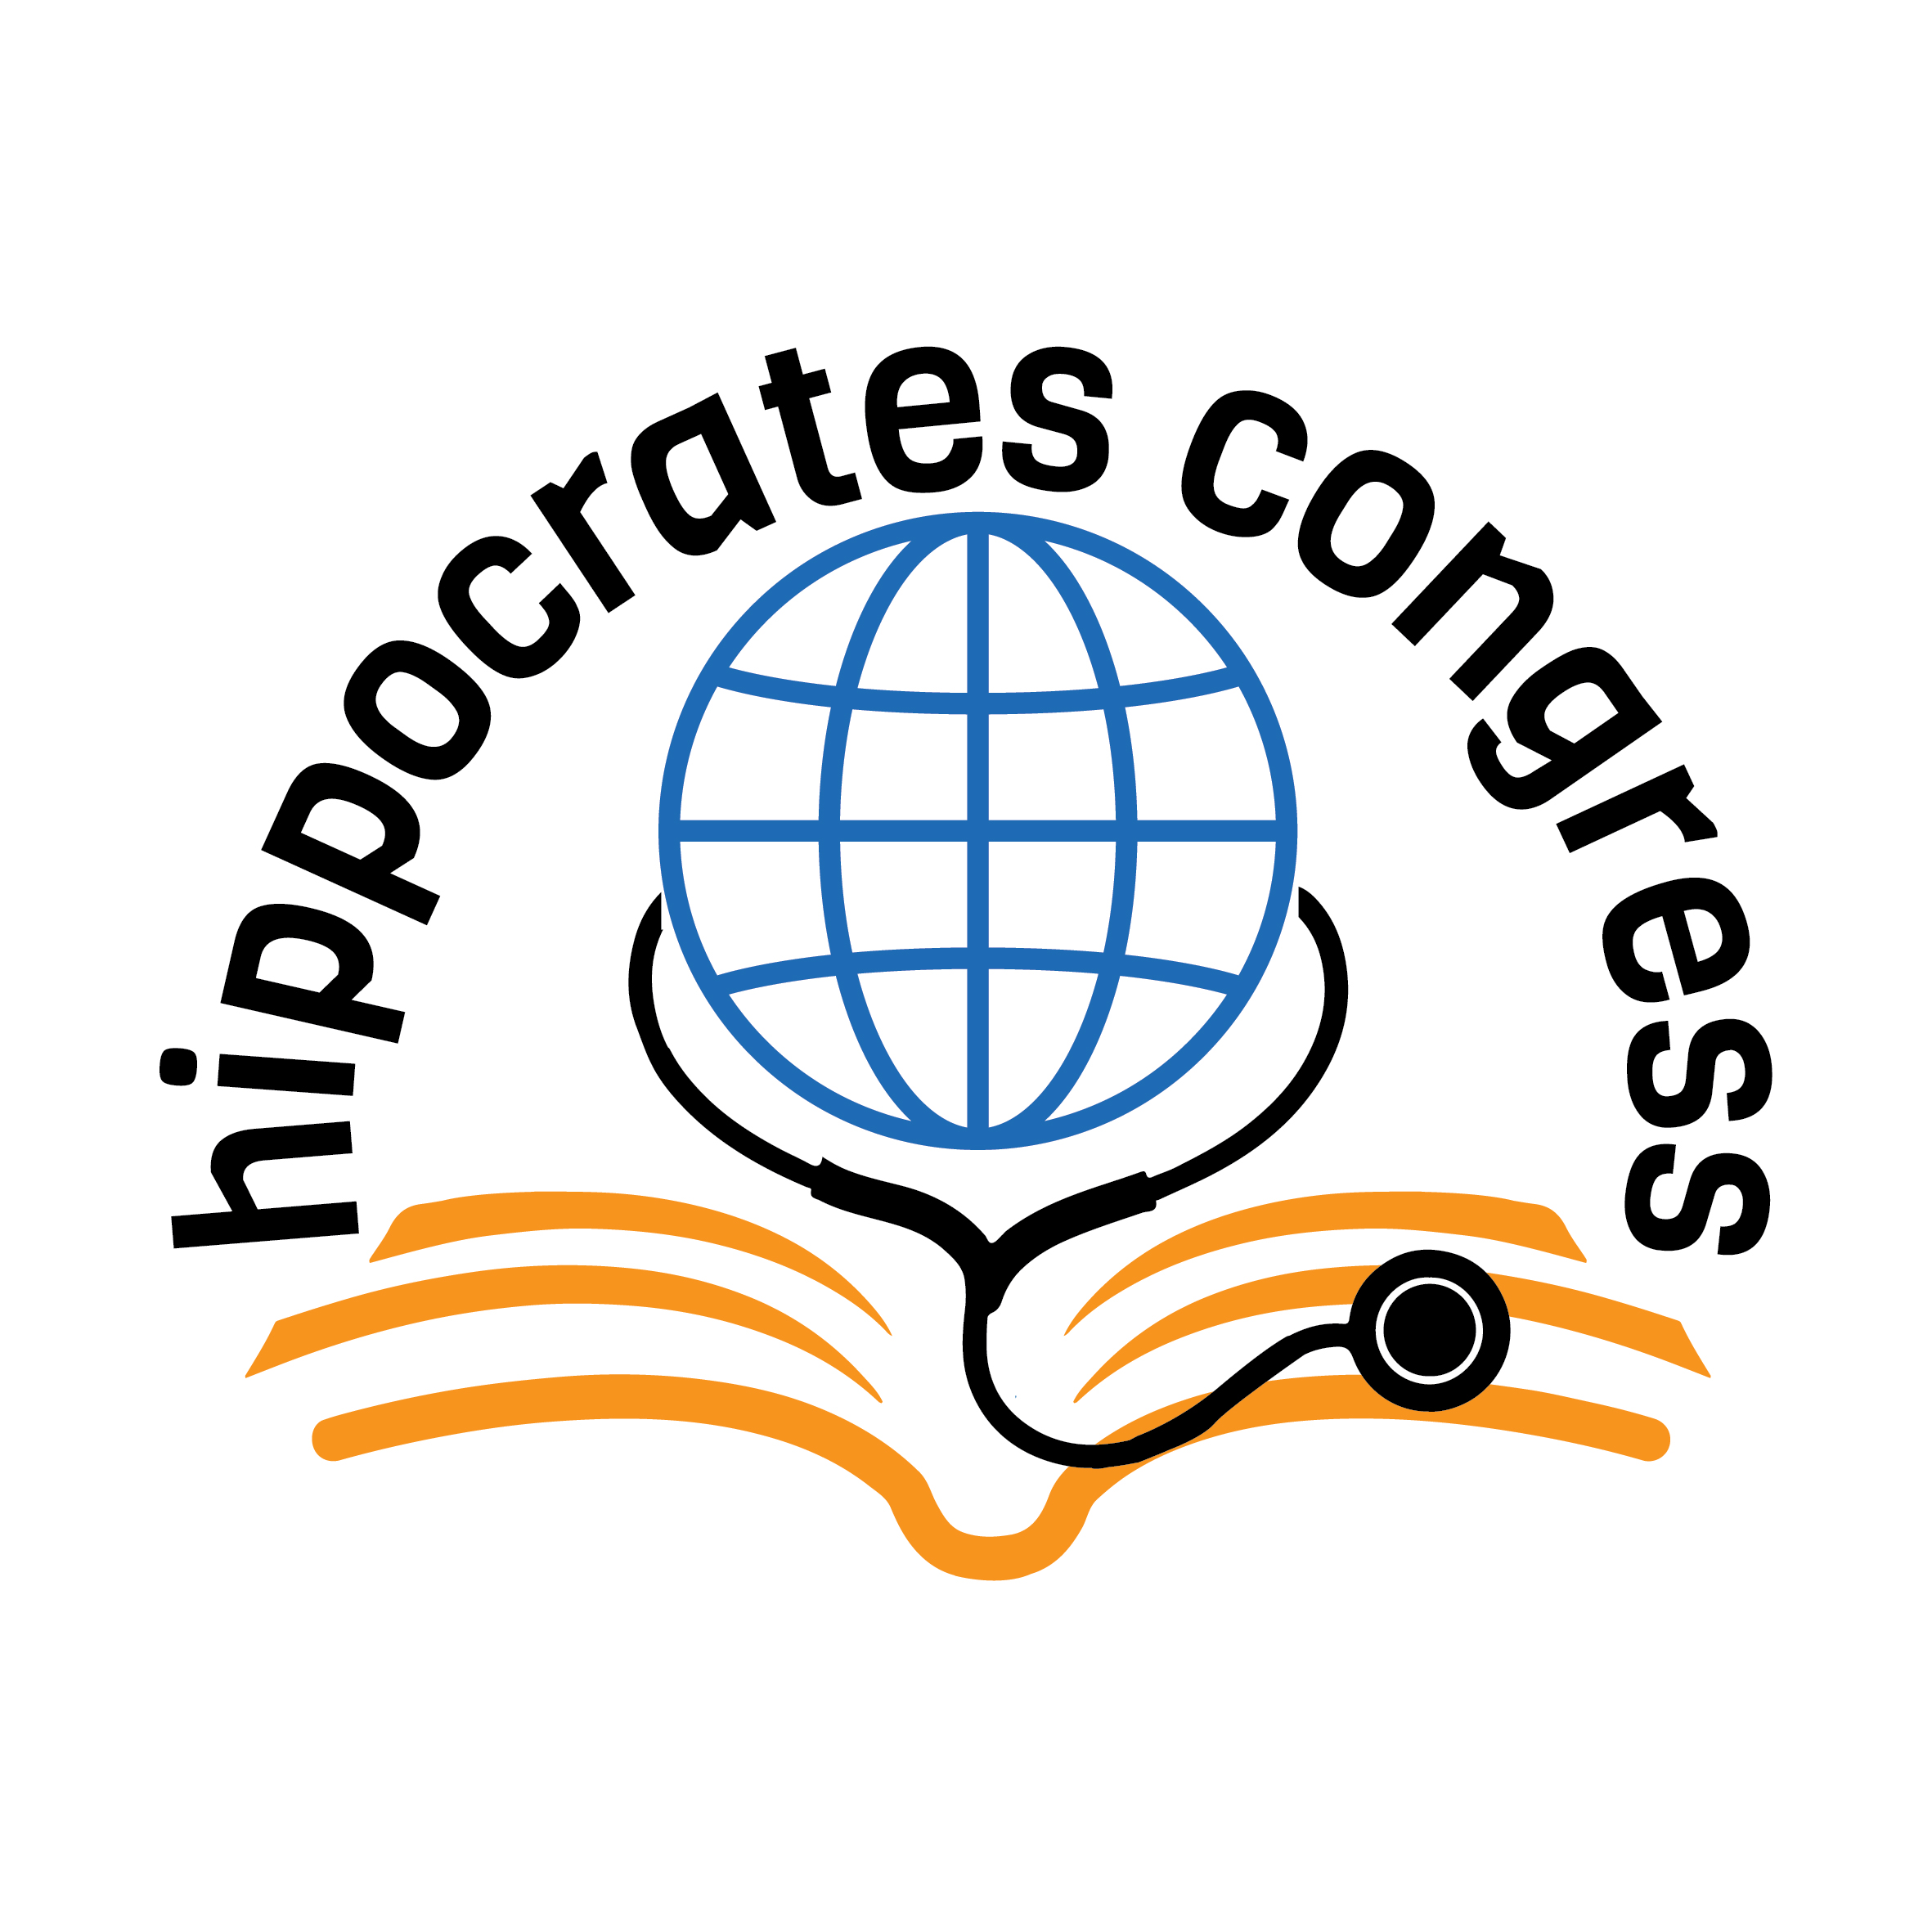 Uluslararası Hipokrat Tıp ve Sağlık Bilimleri Kongresi